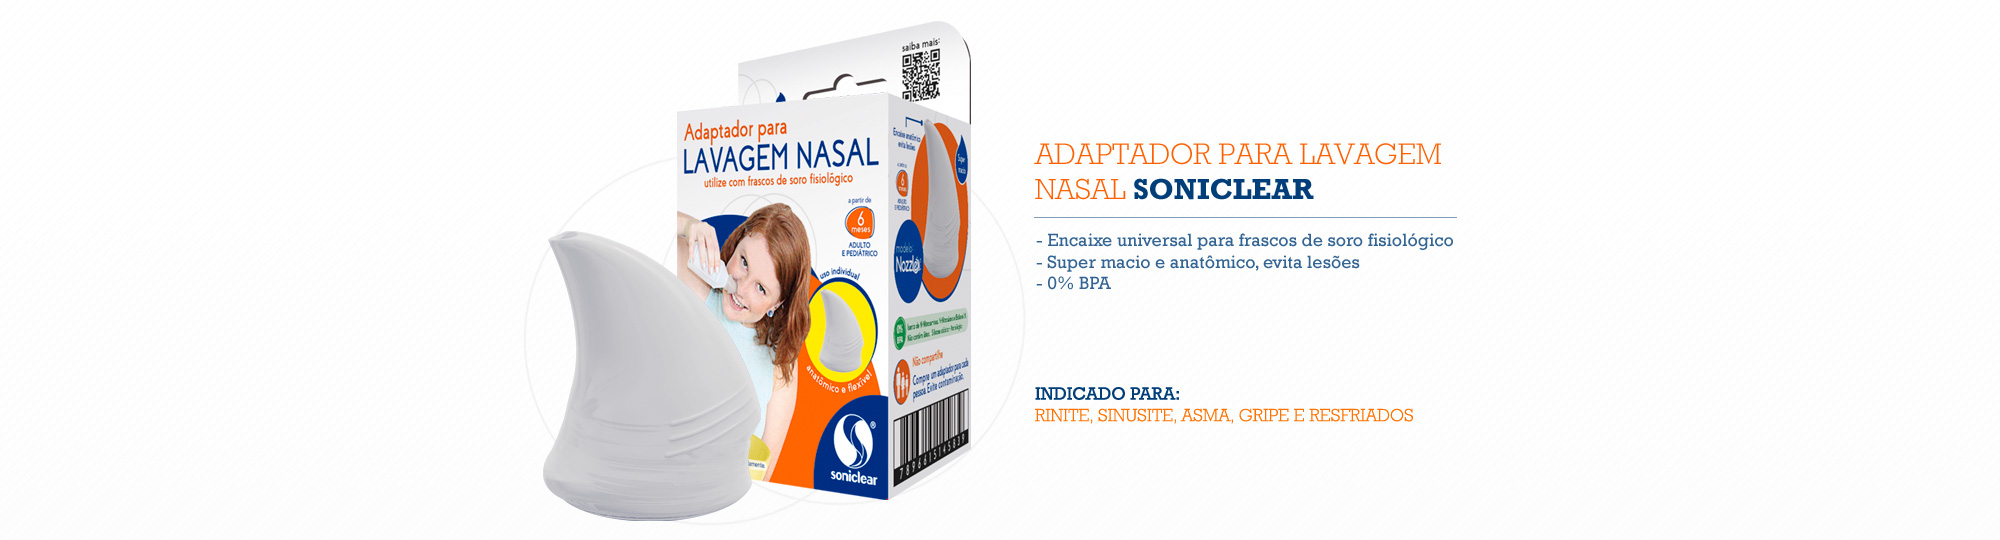 Adaptador para lavagem nasal Soniclear